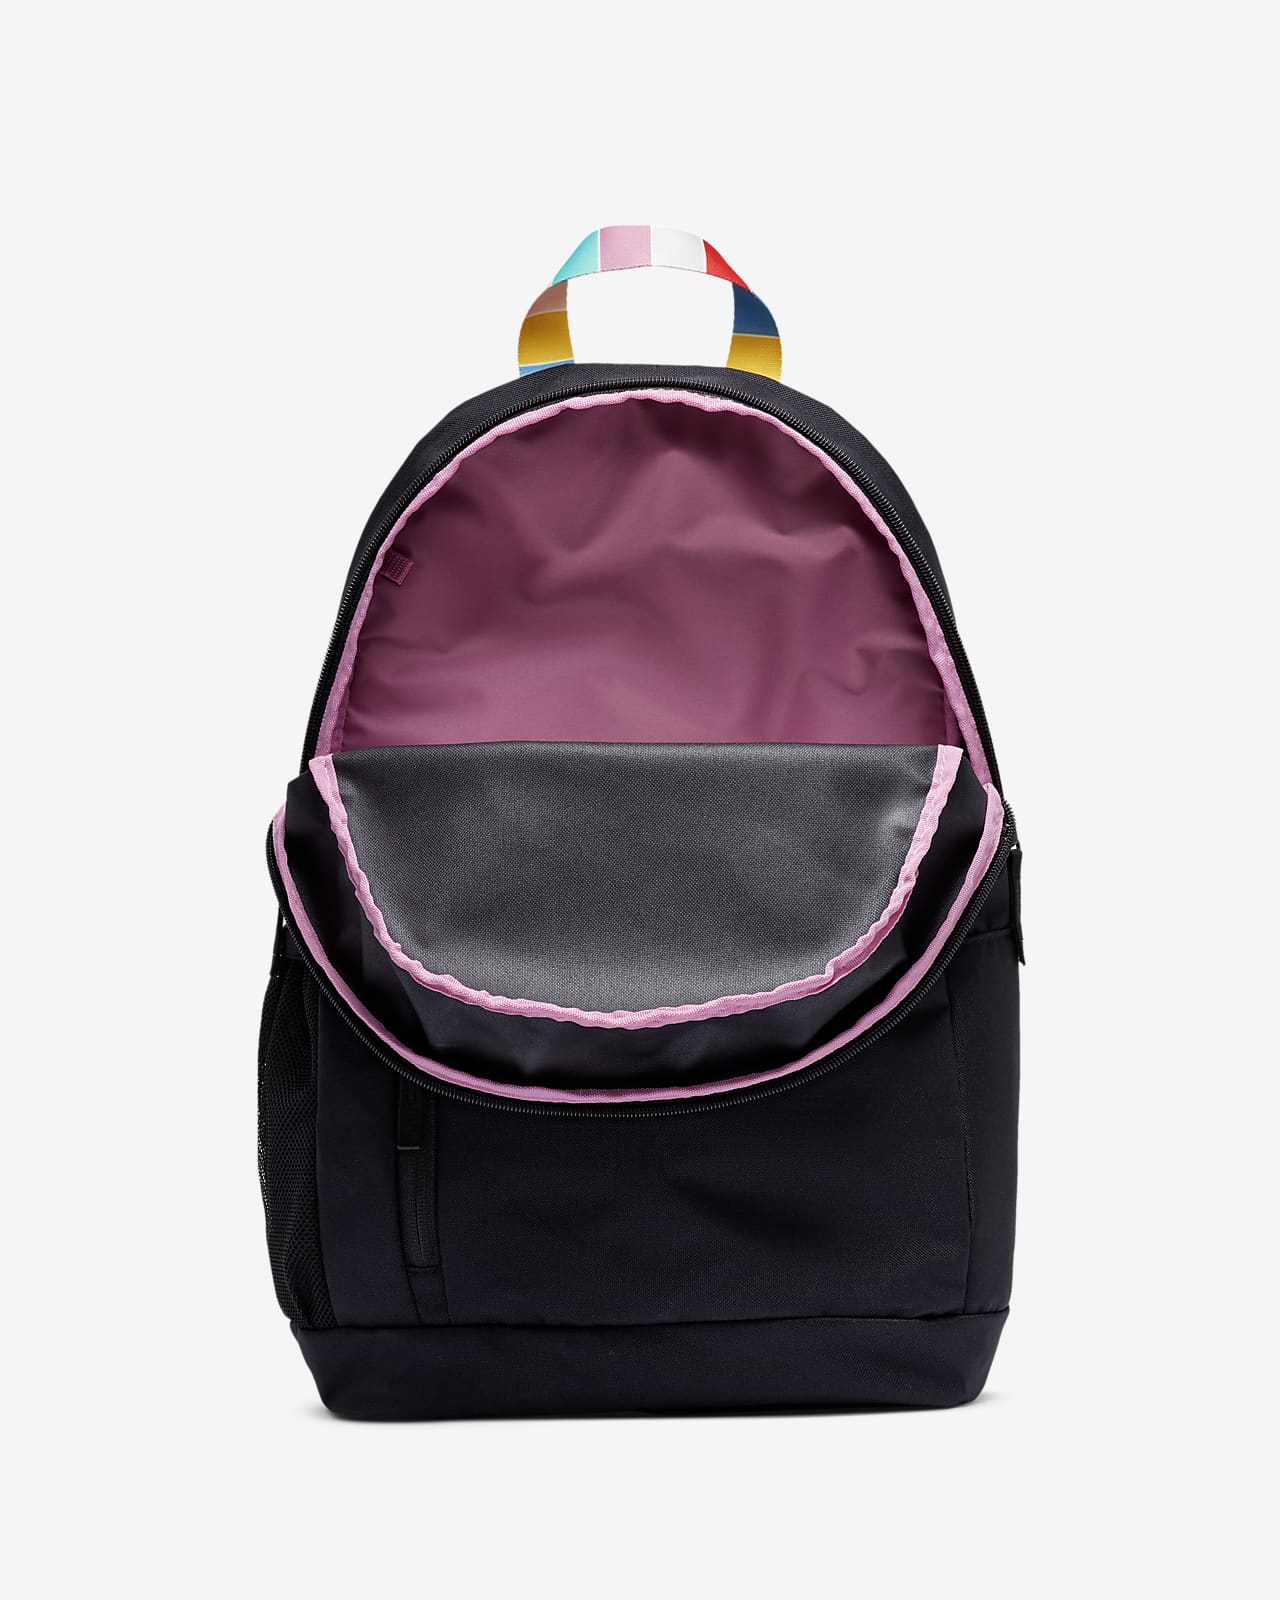 nike rainbow backpack